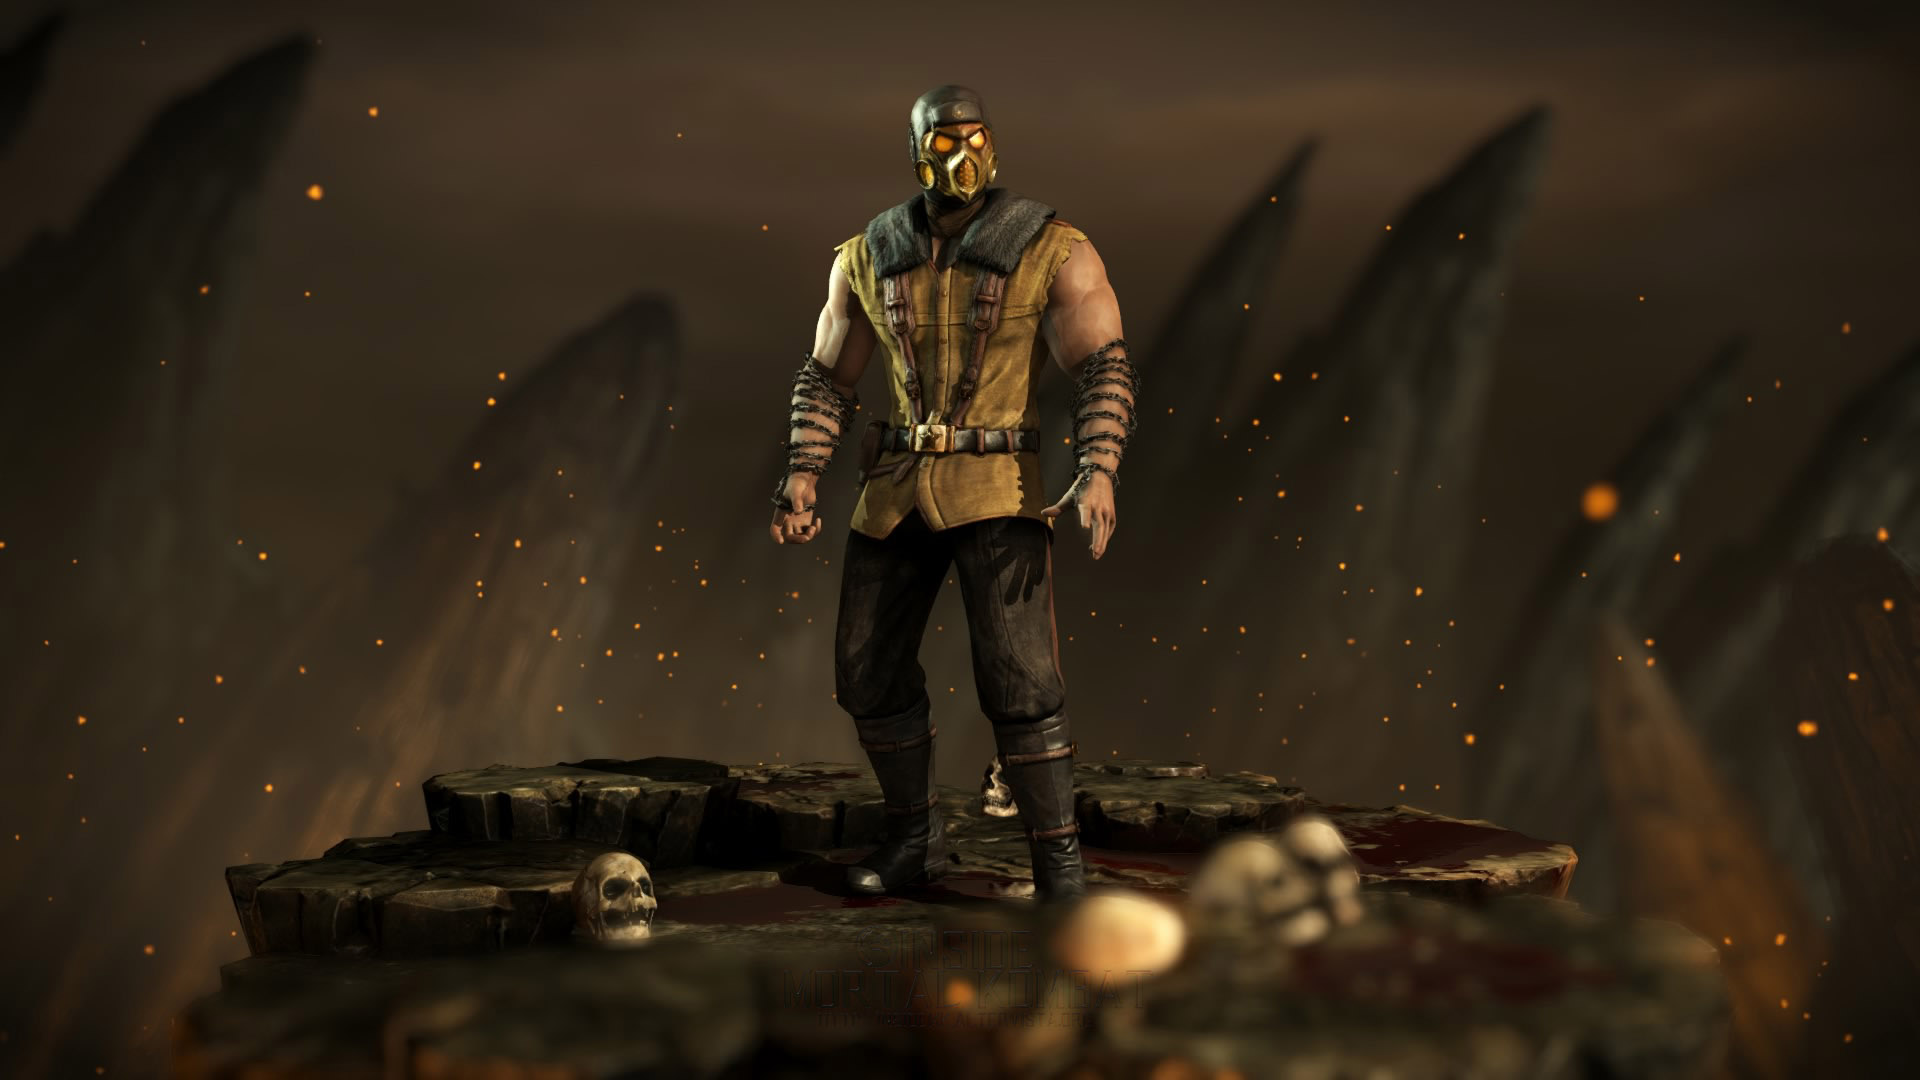 Mortal Kombat X lança Klassic Fatality Pack 1 e Skin de Scorpion